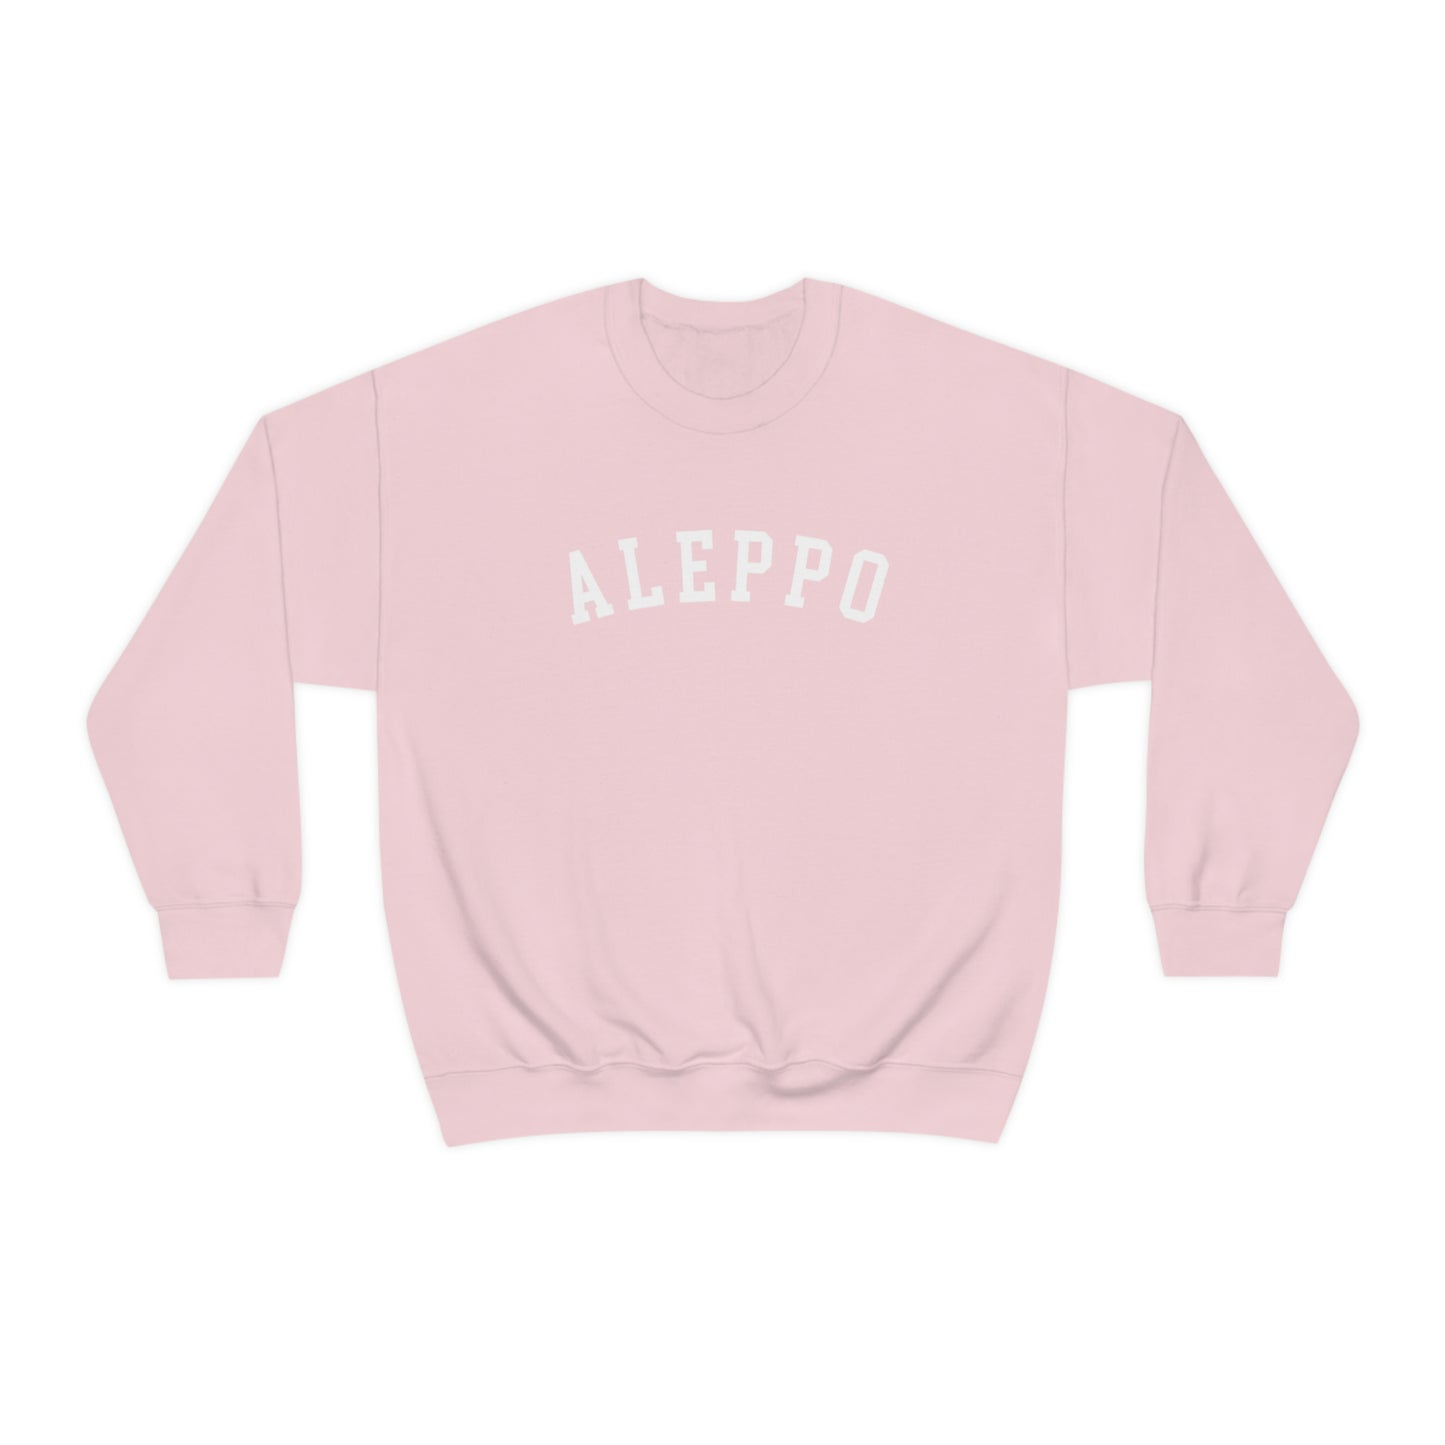 Adult | Aleppo | Crewneck Sweatshirt